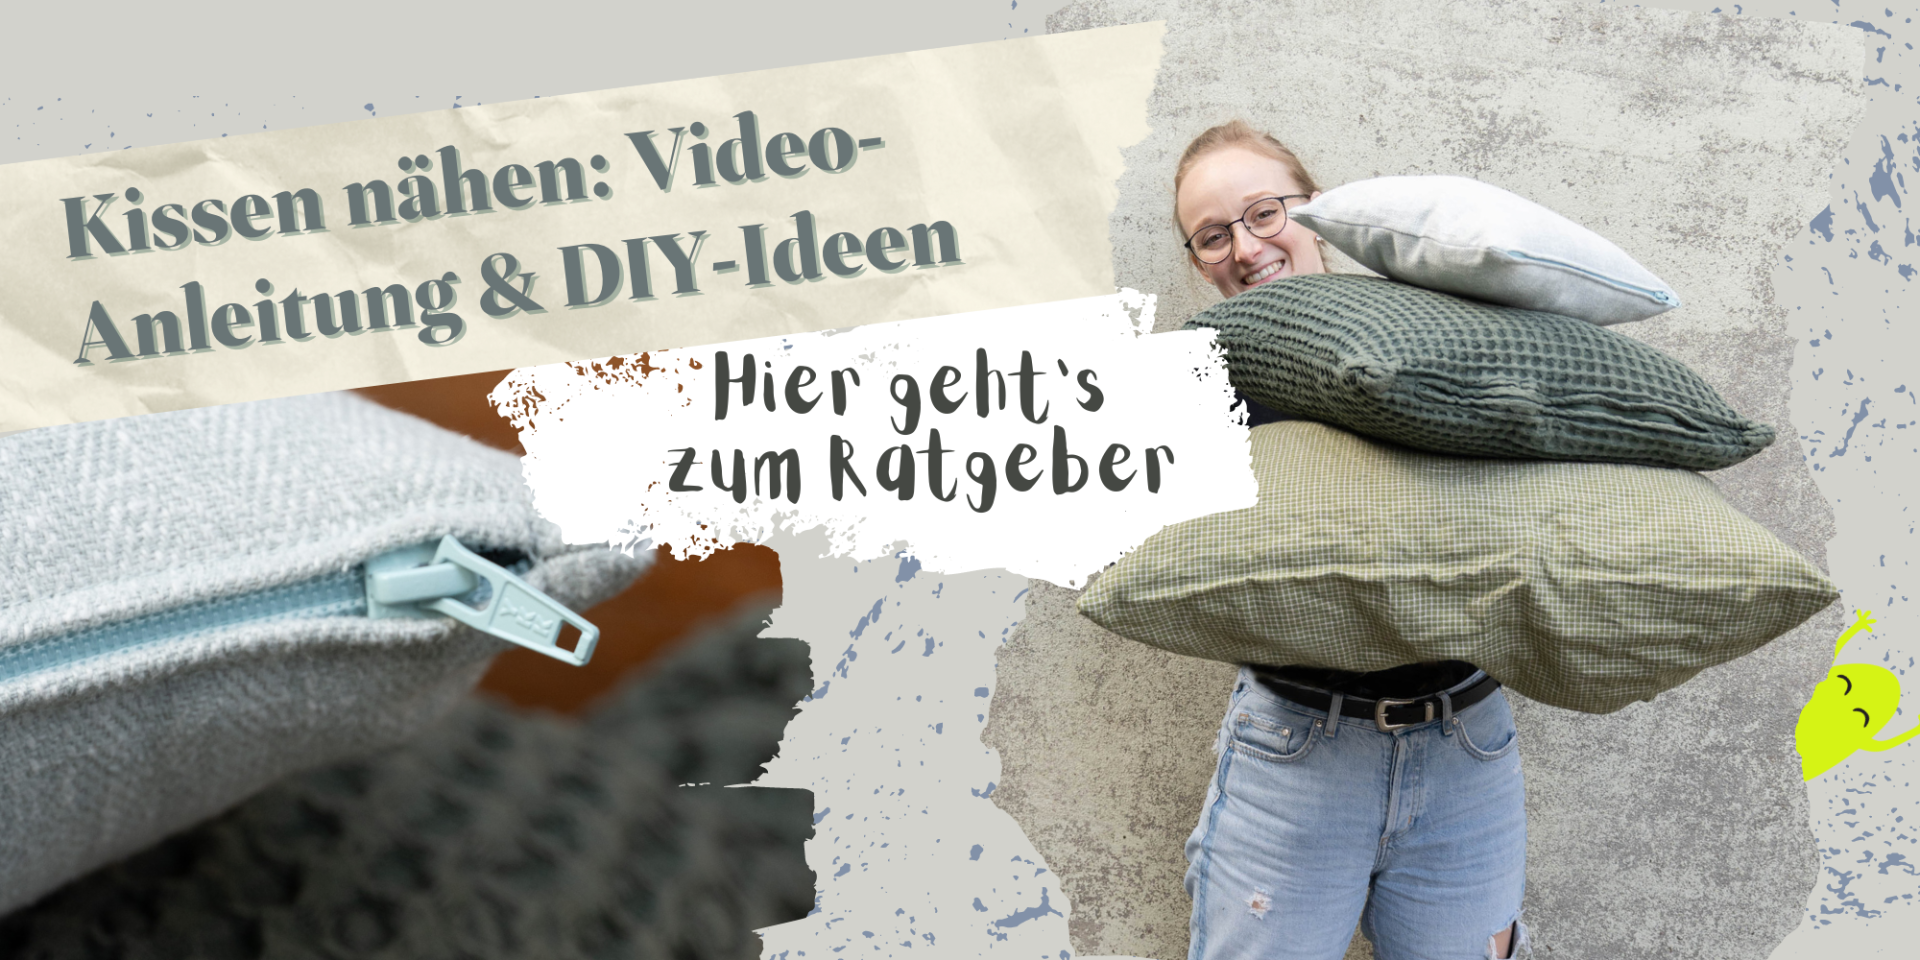 Kissen nähen - Video-Anleitung, Ratgeber, DIY-Ideen